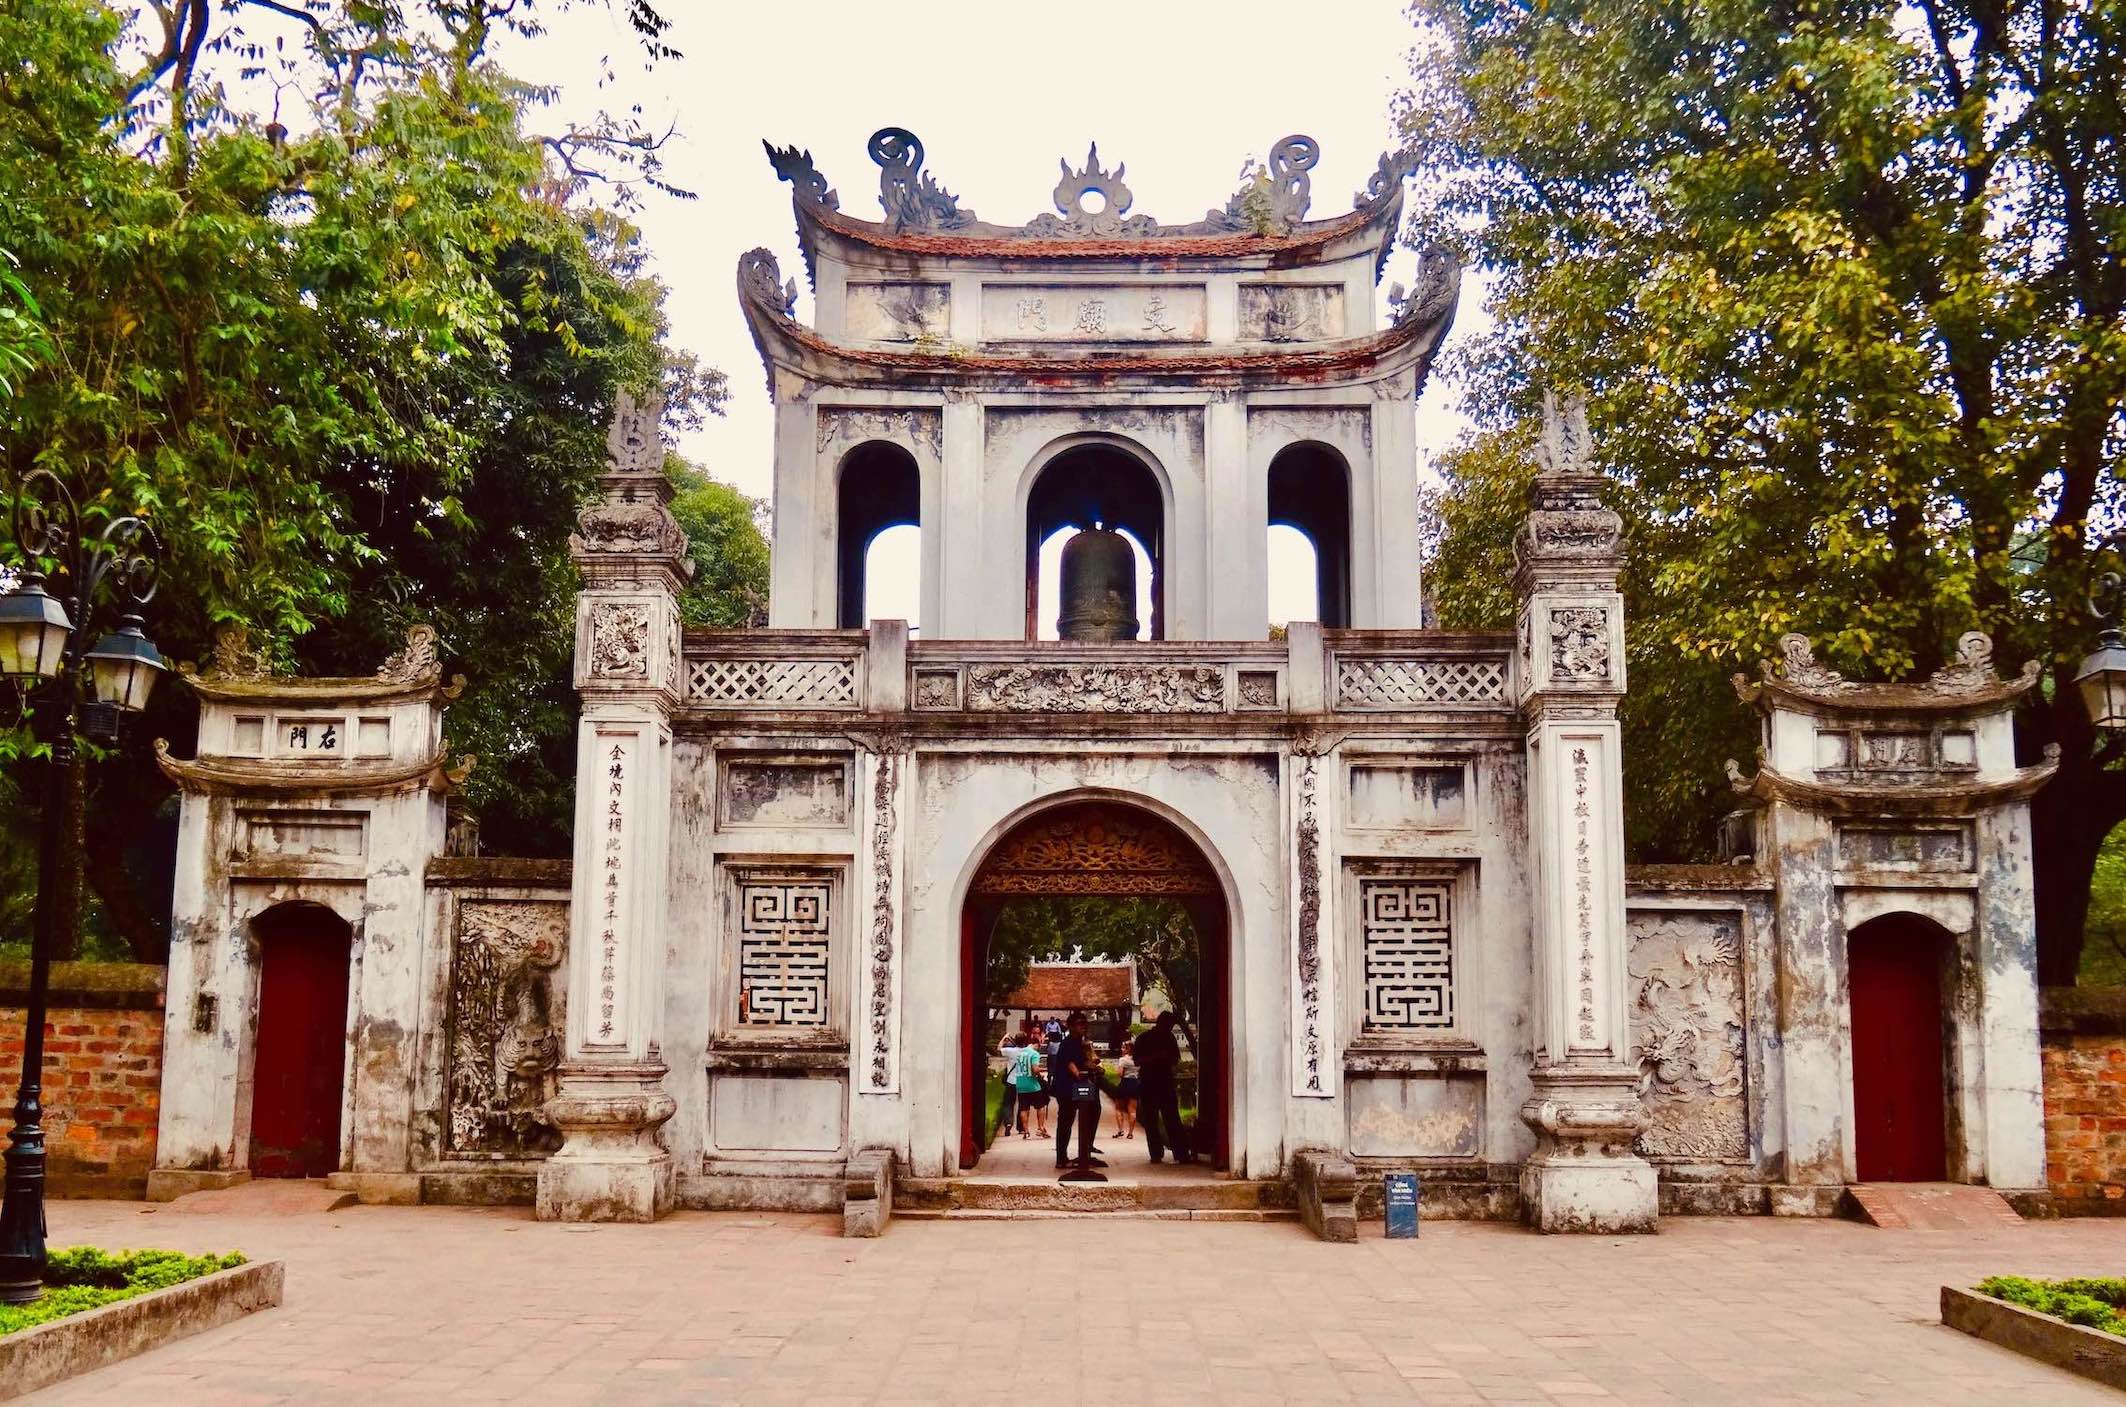 Temple of Literature Hanoi.